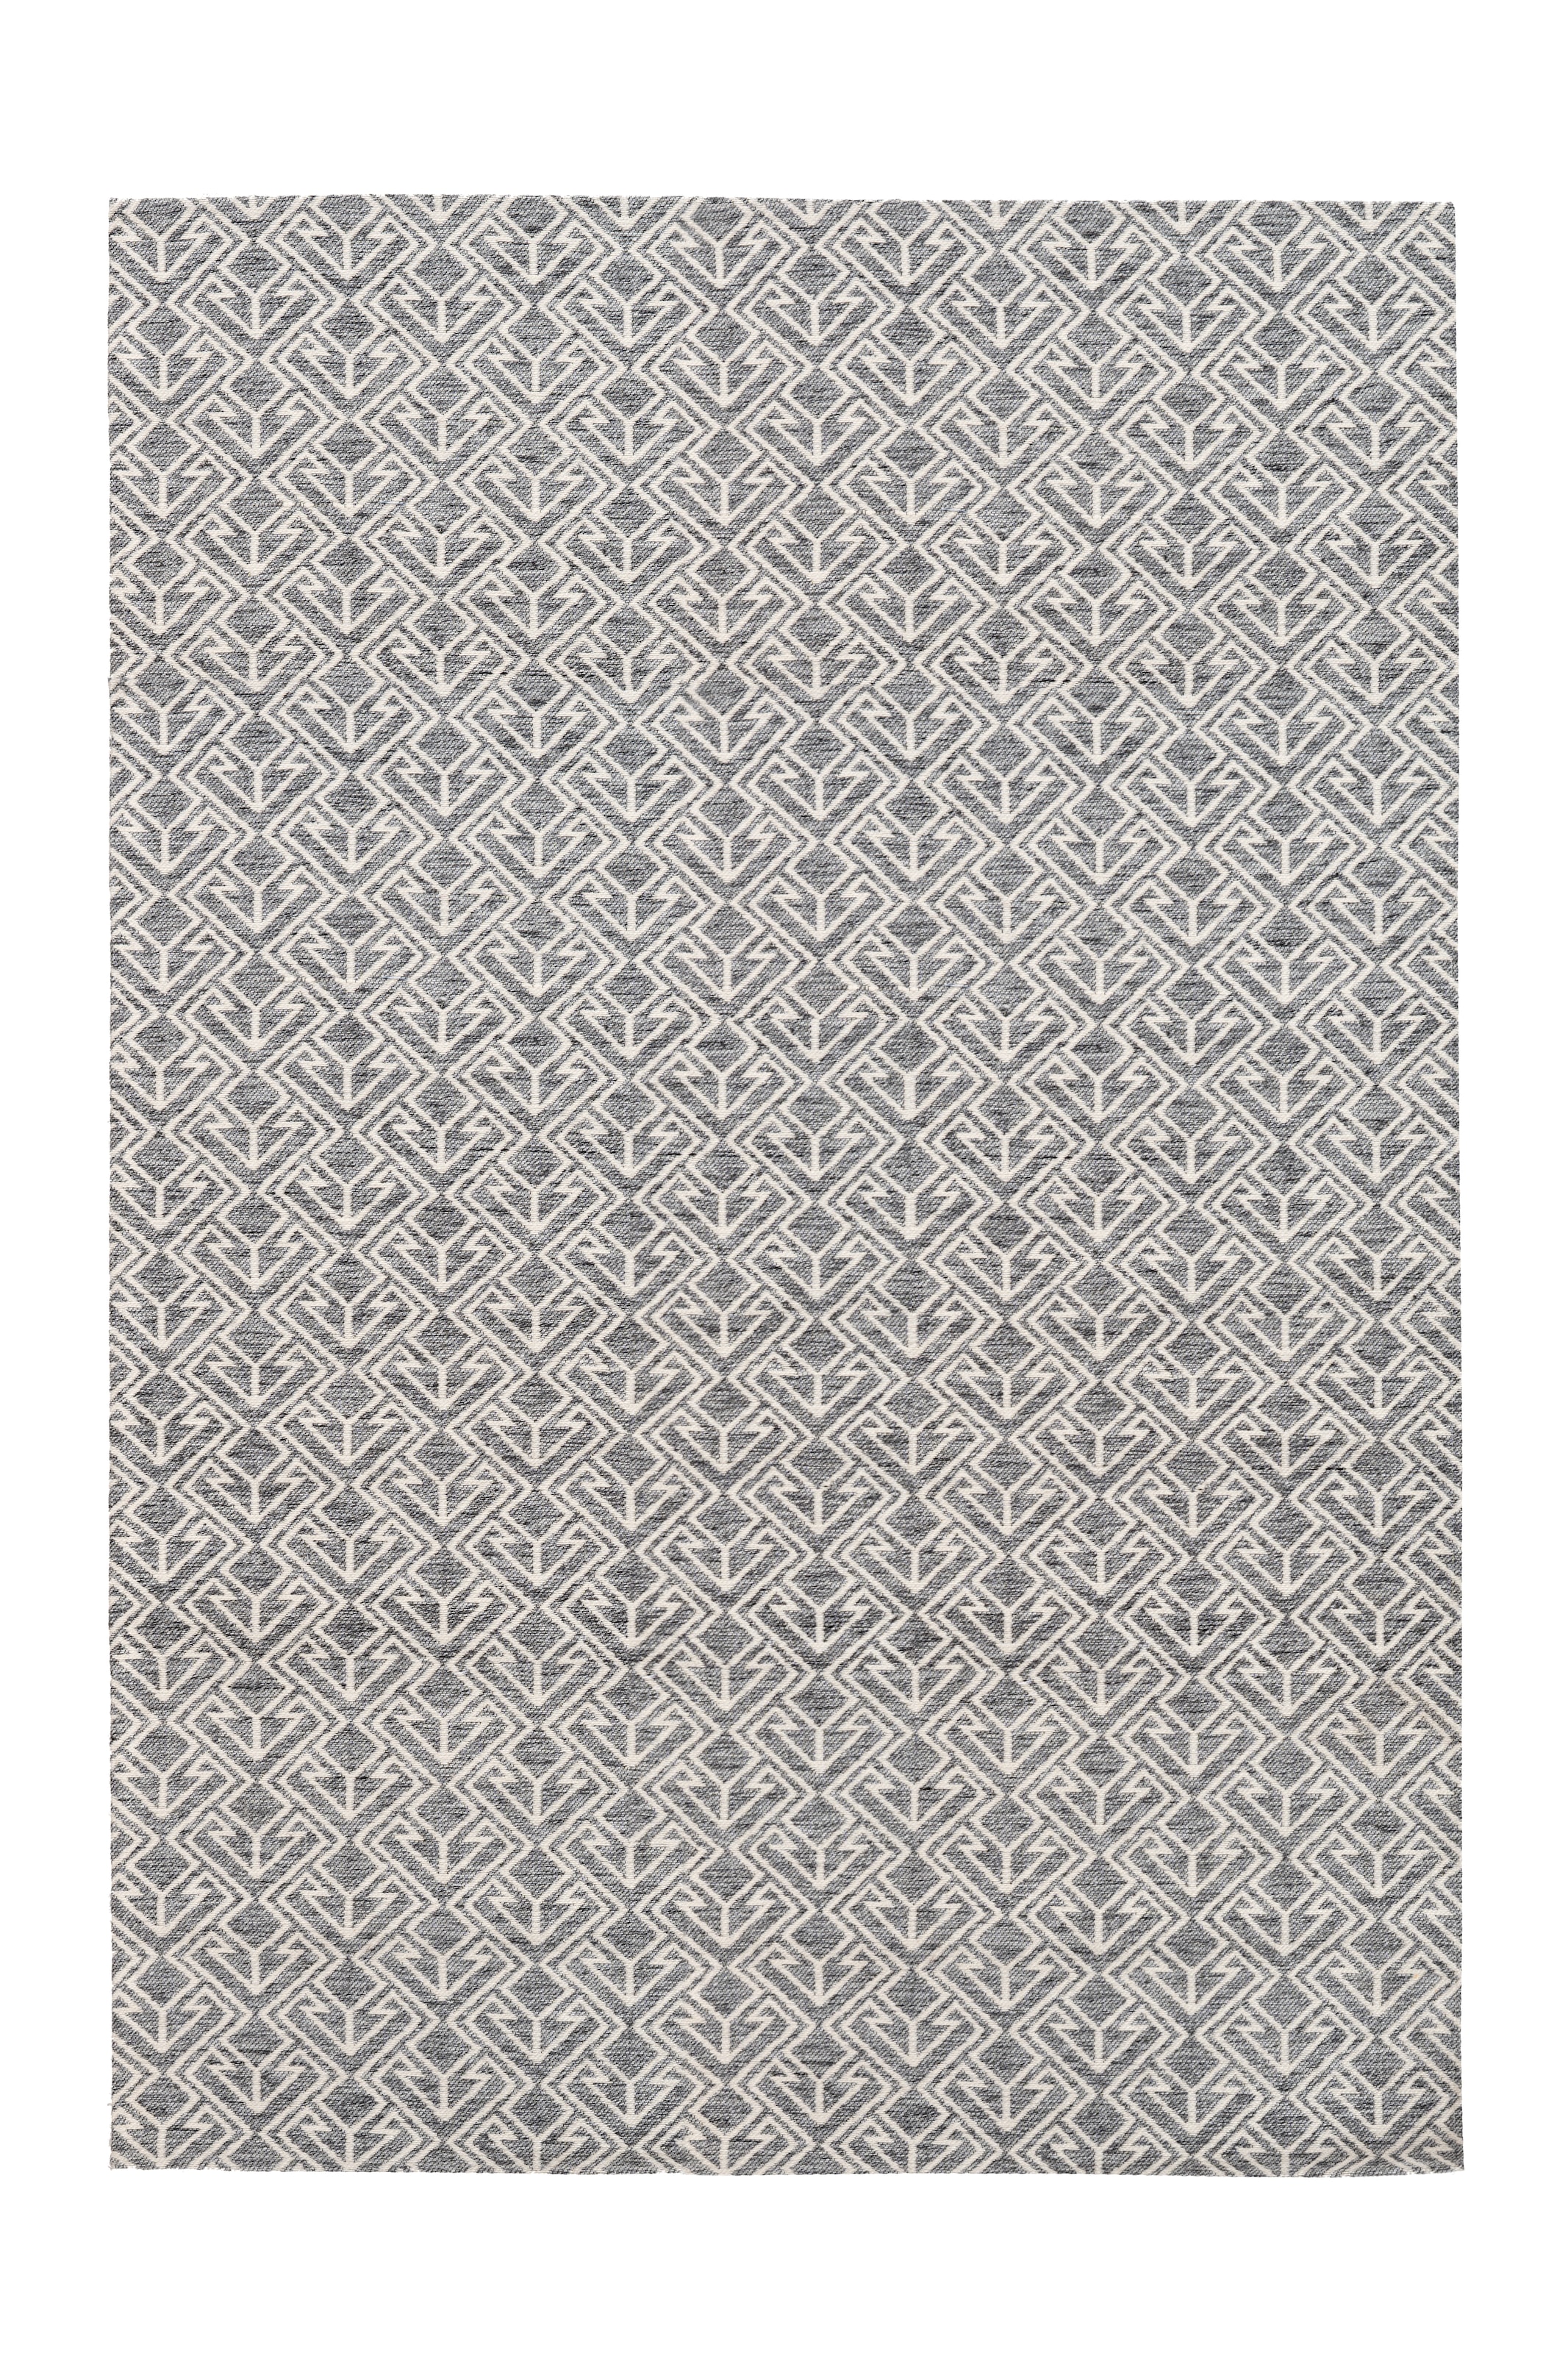 Arte Espina Teppich »Yoga 100«, rechteckig, Teppich für Indoor & Outdoor, Fussbodenheizung geeignet, Pflegeleicht